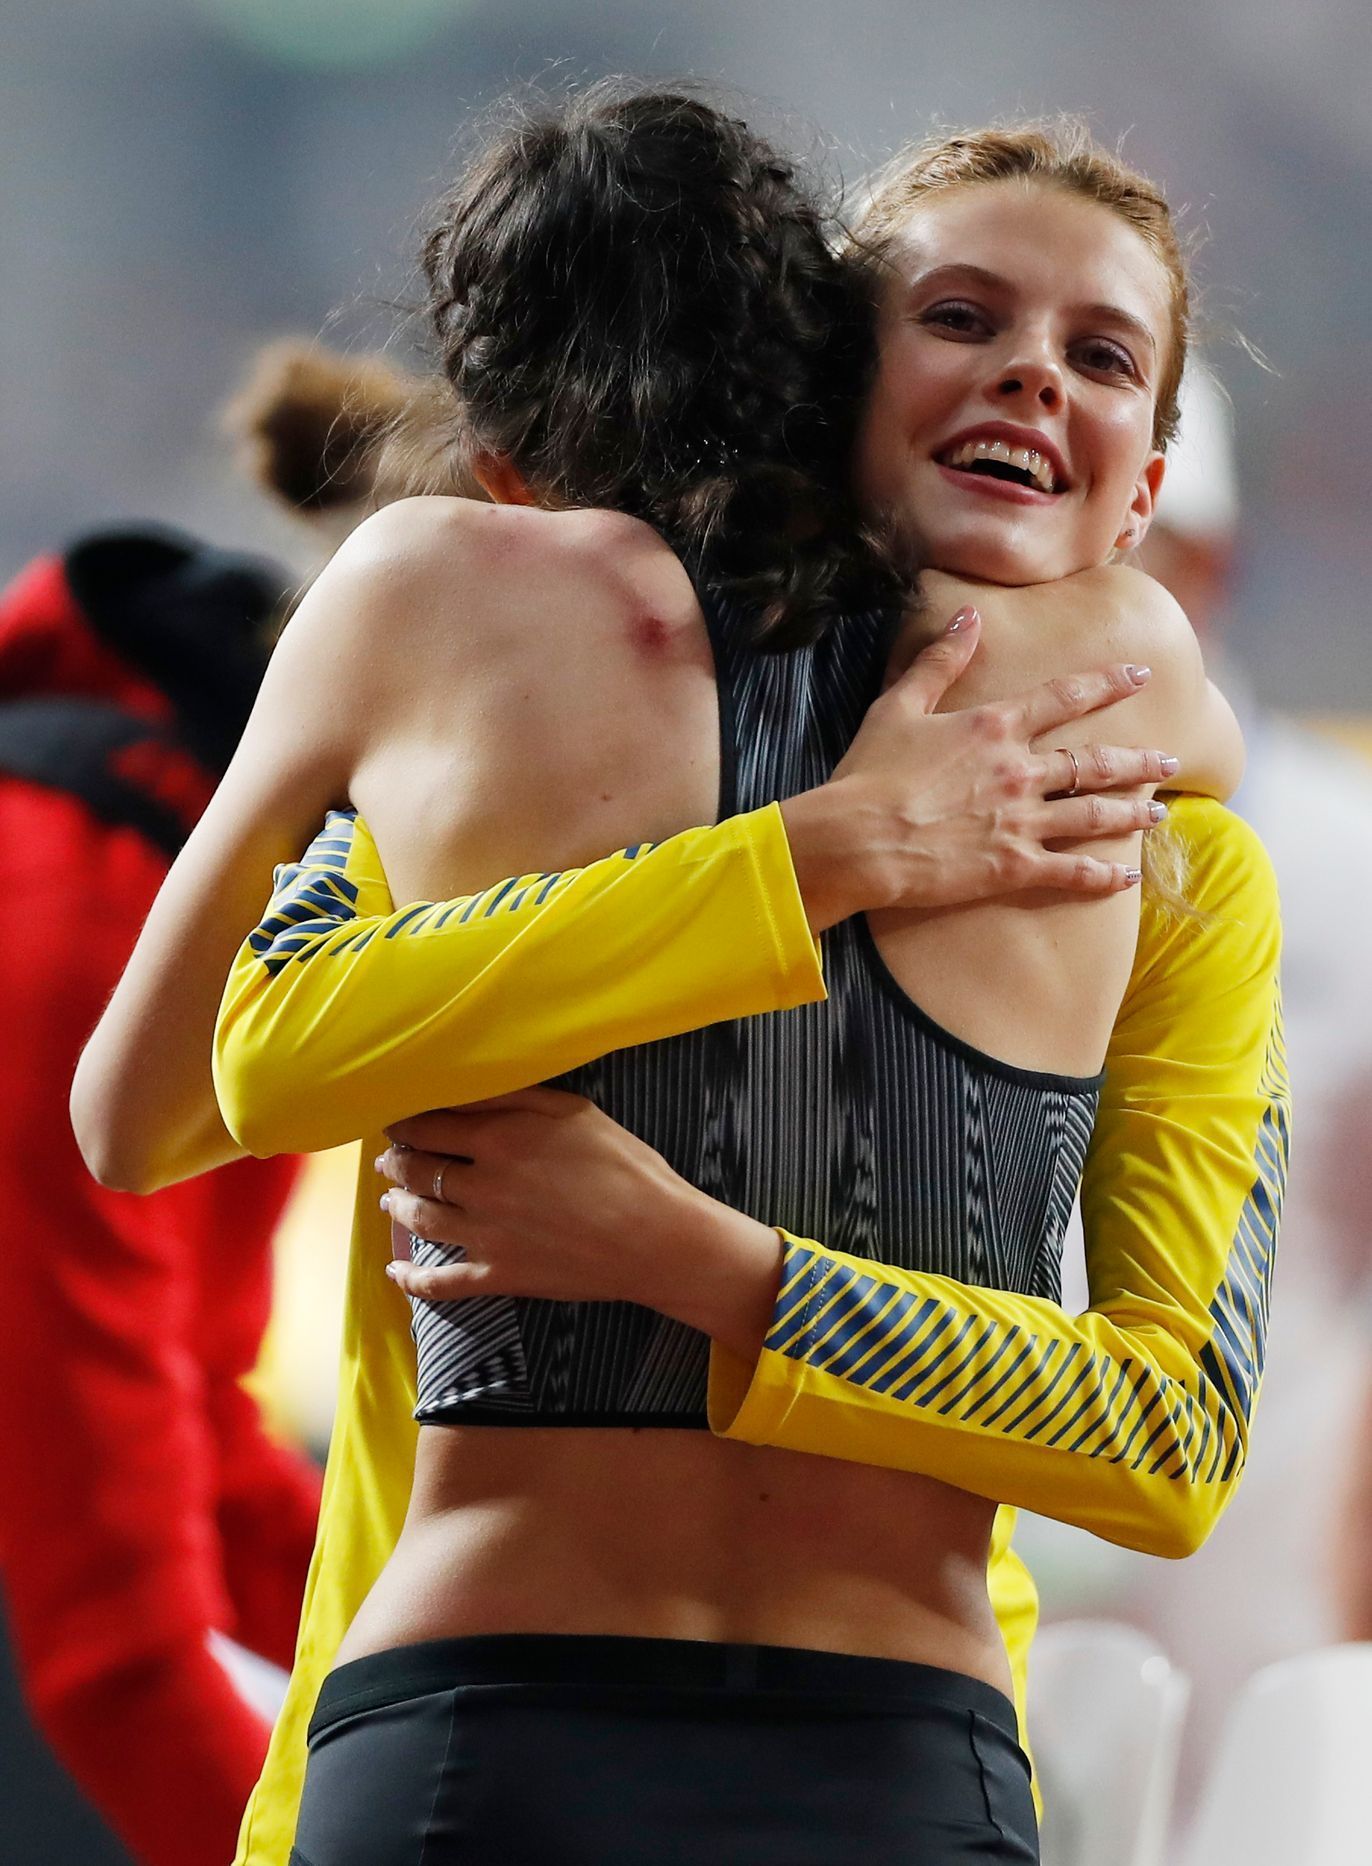 MS v atletice 2019: Ruska Marija Lasickeneová (zády) a Ukrajinka Jaroslava Mahučichová v objetí po závodě ve skoku vysokém